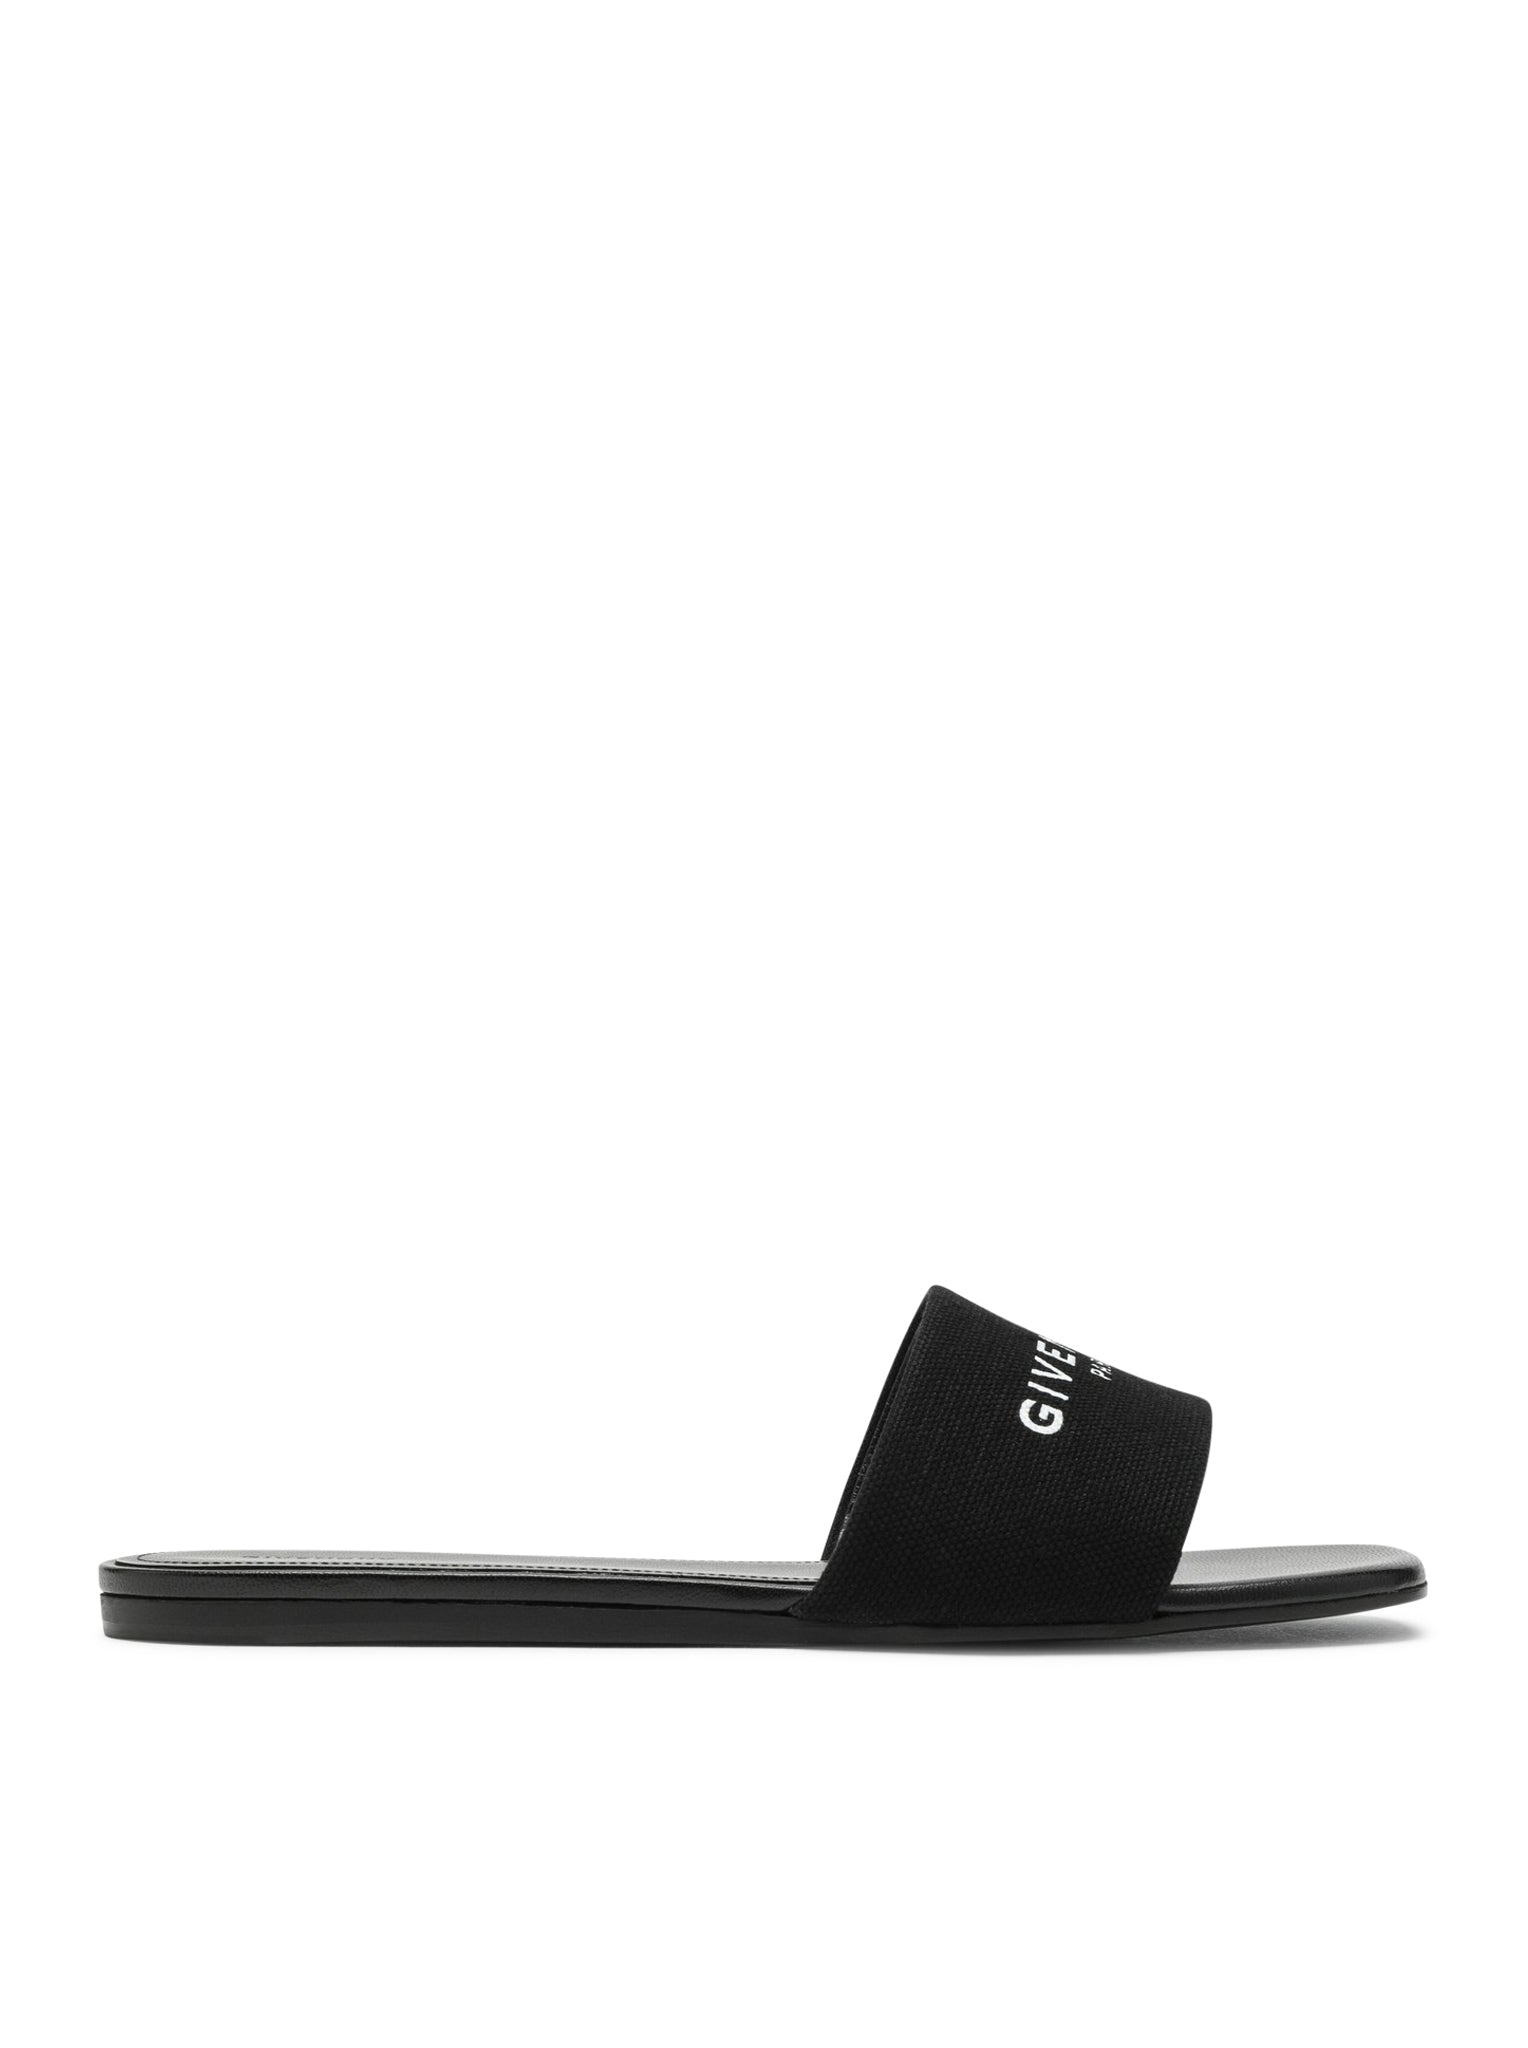 Low black canvas sandal